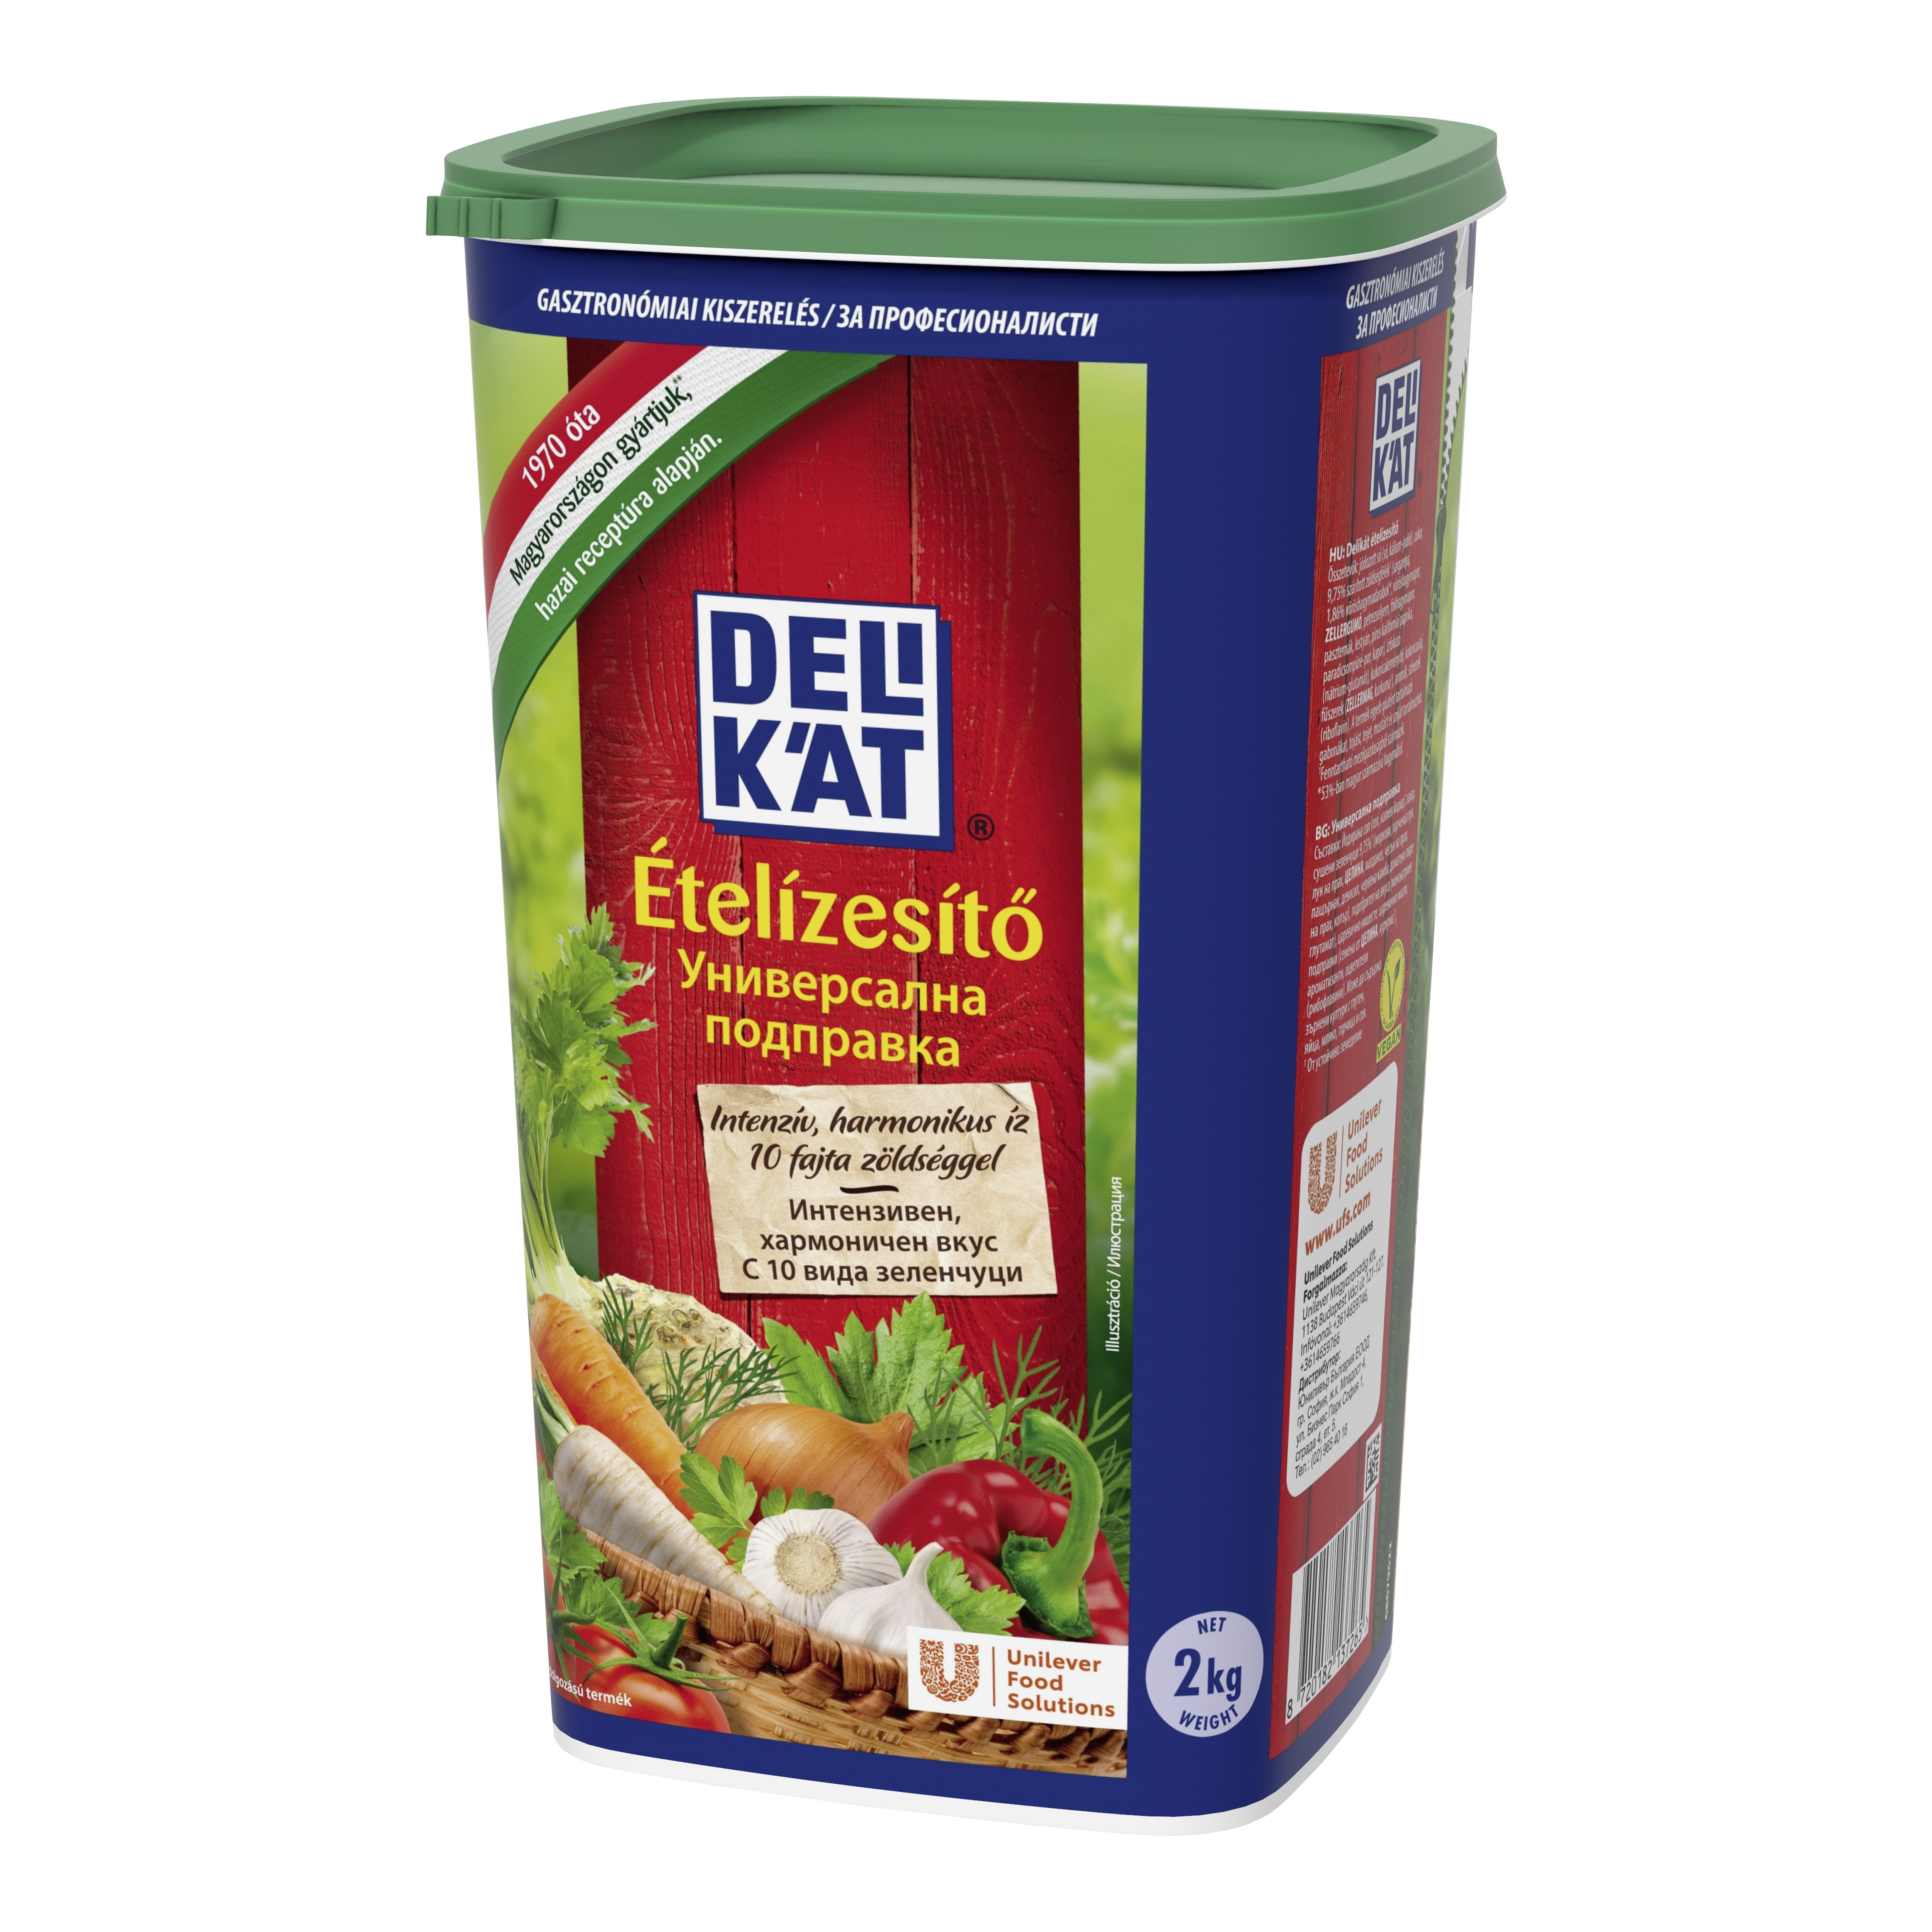 Knorr Delikat začinska mješavina 2 kg - 